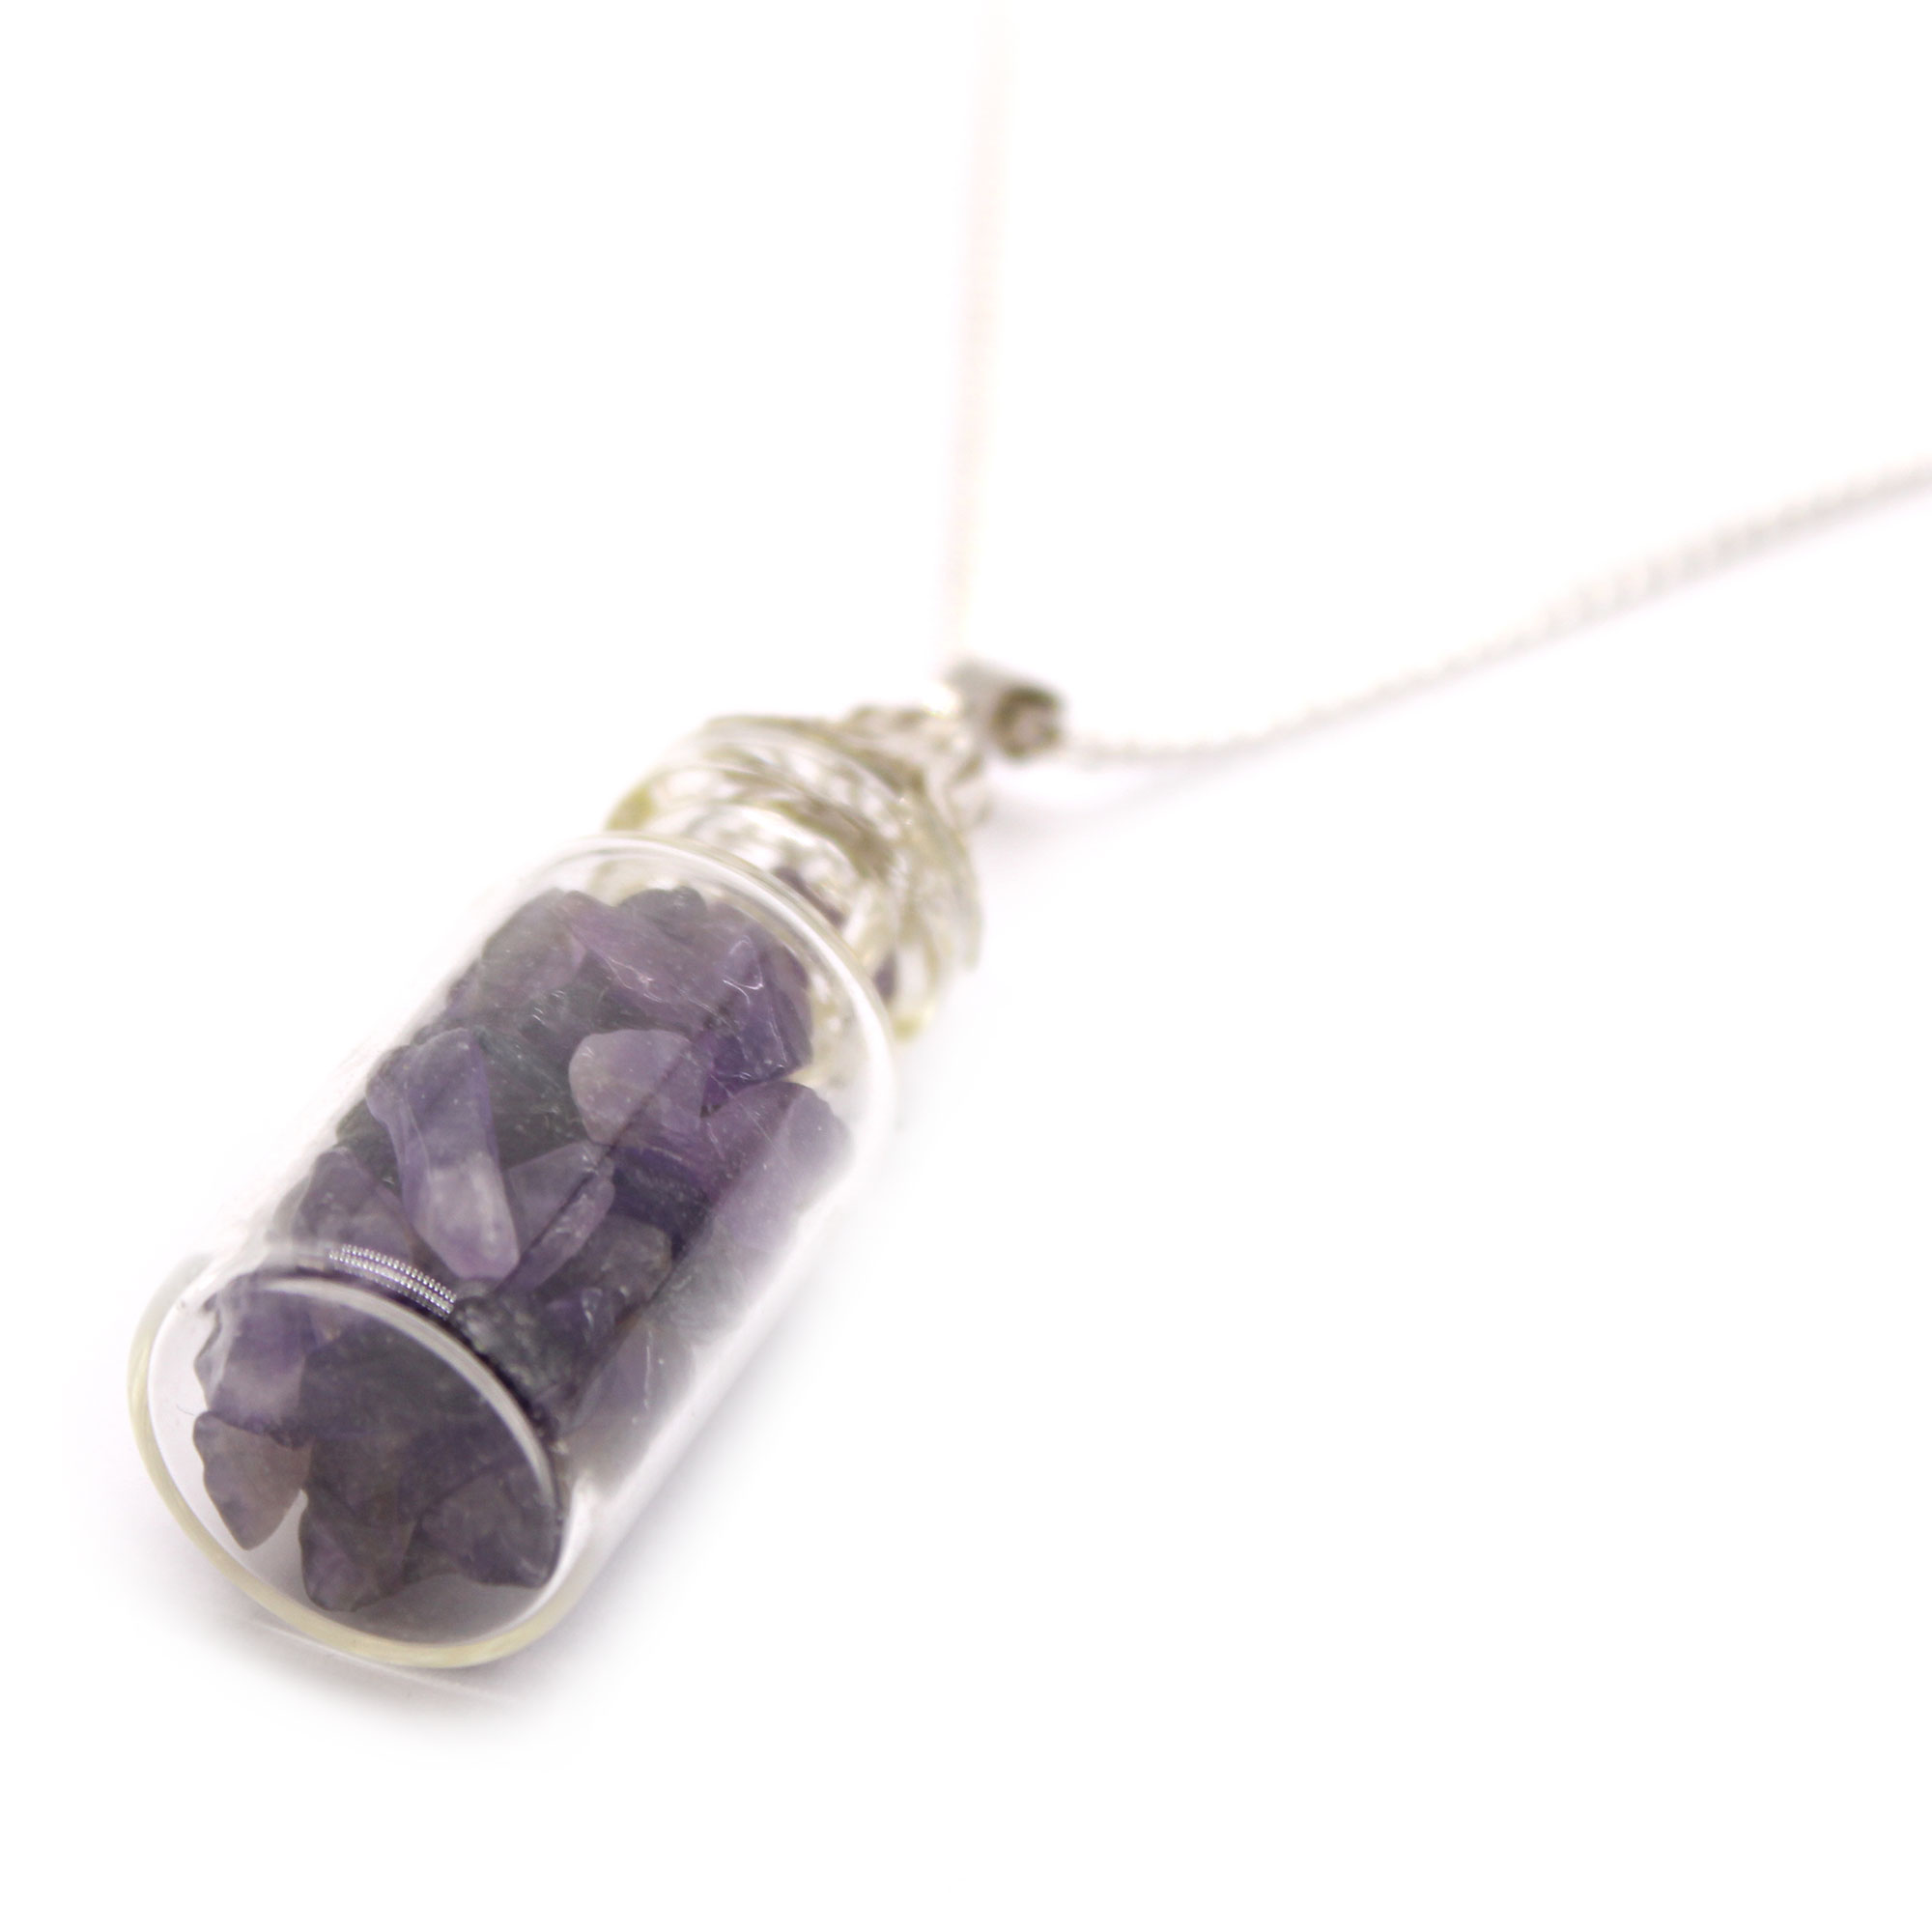 Bottled Gemstones Necklace - Amethyst